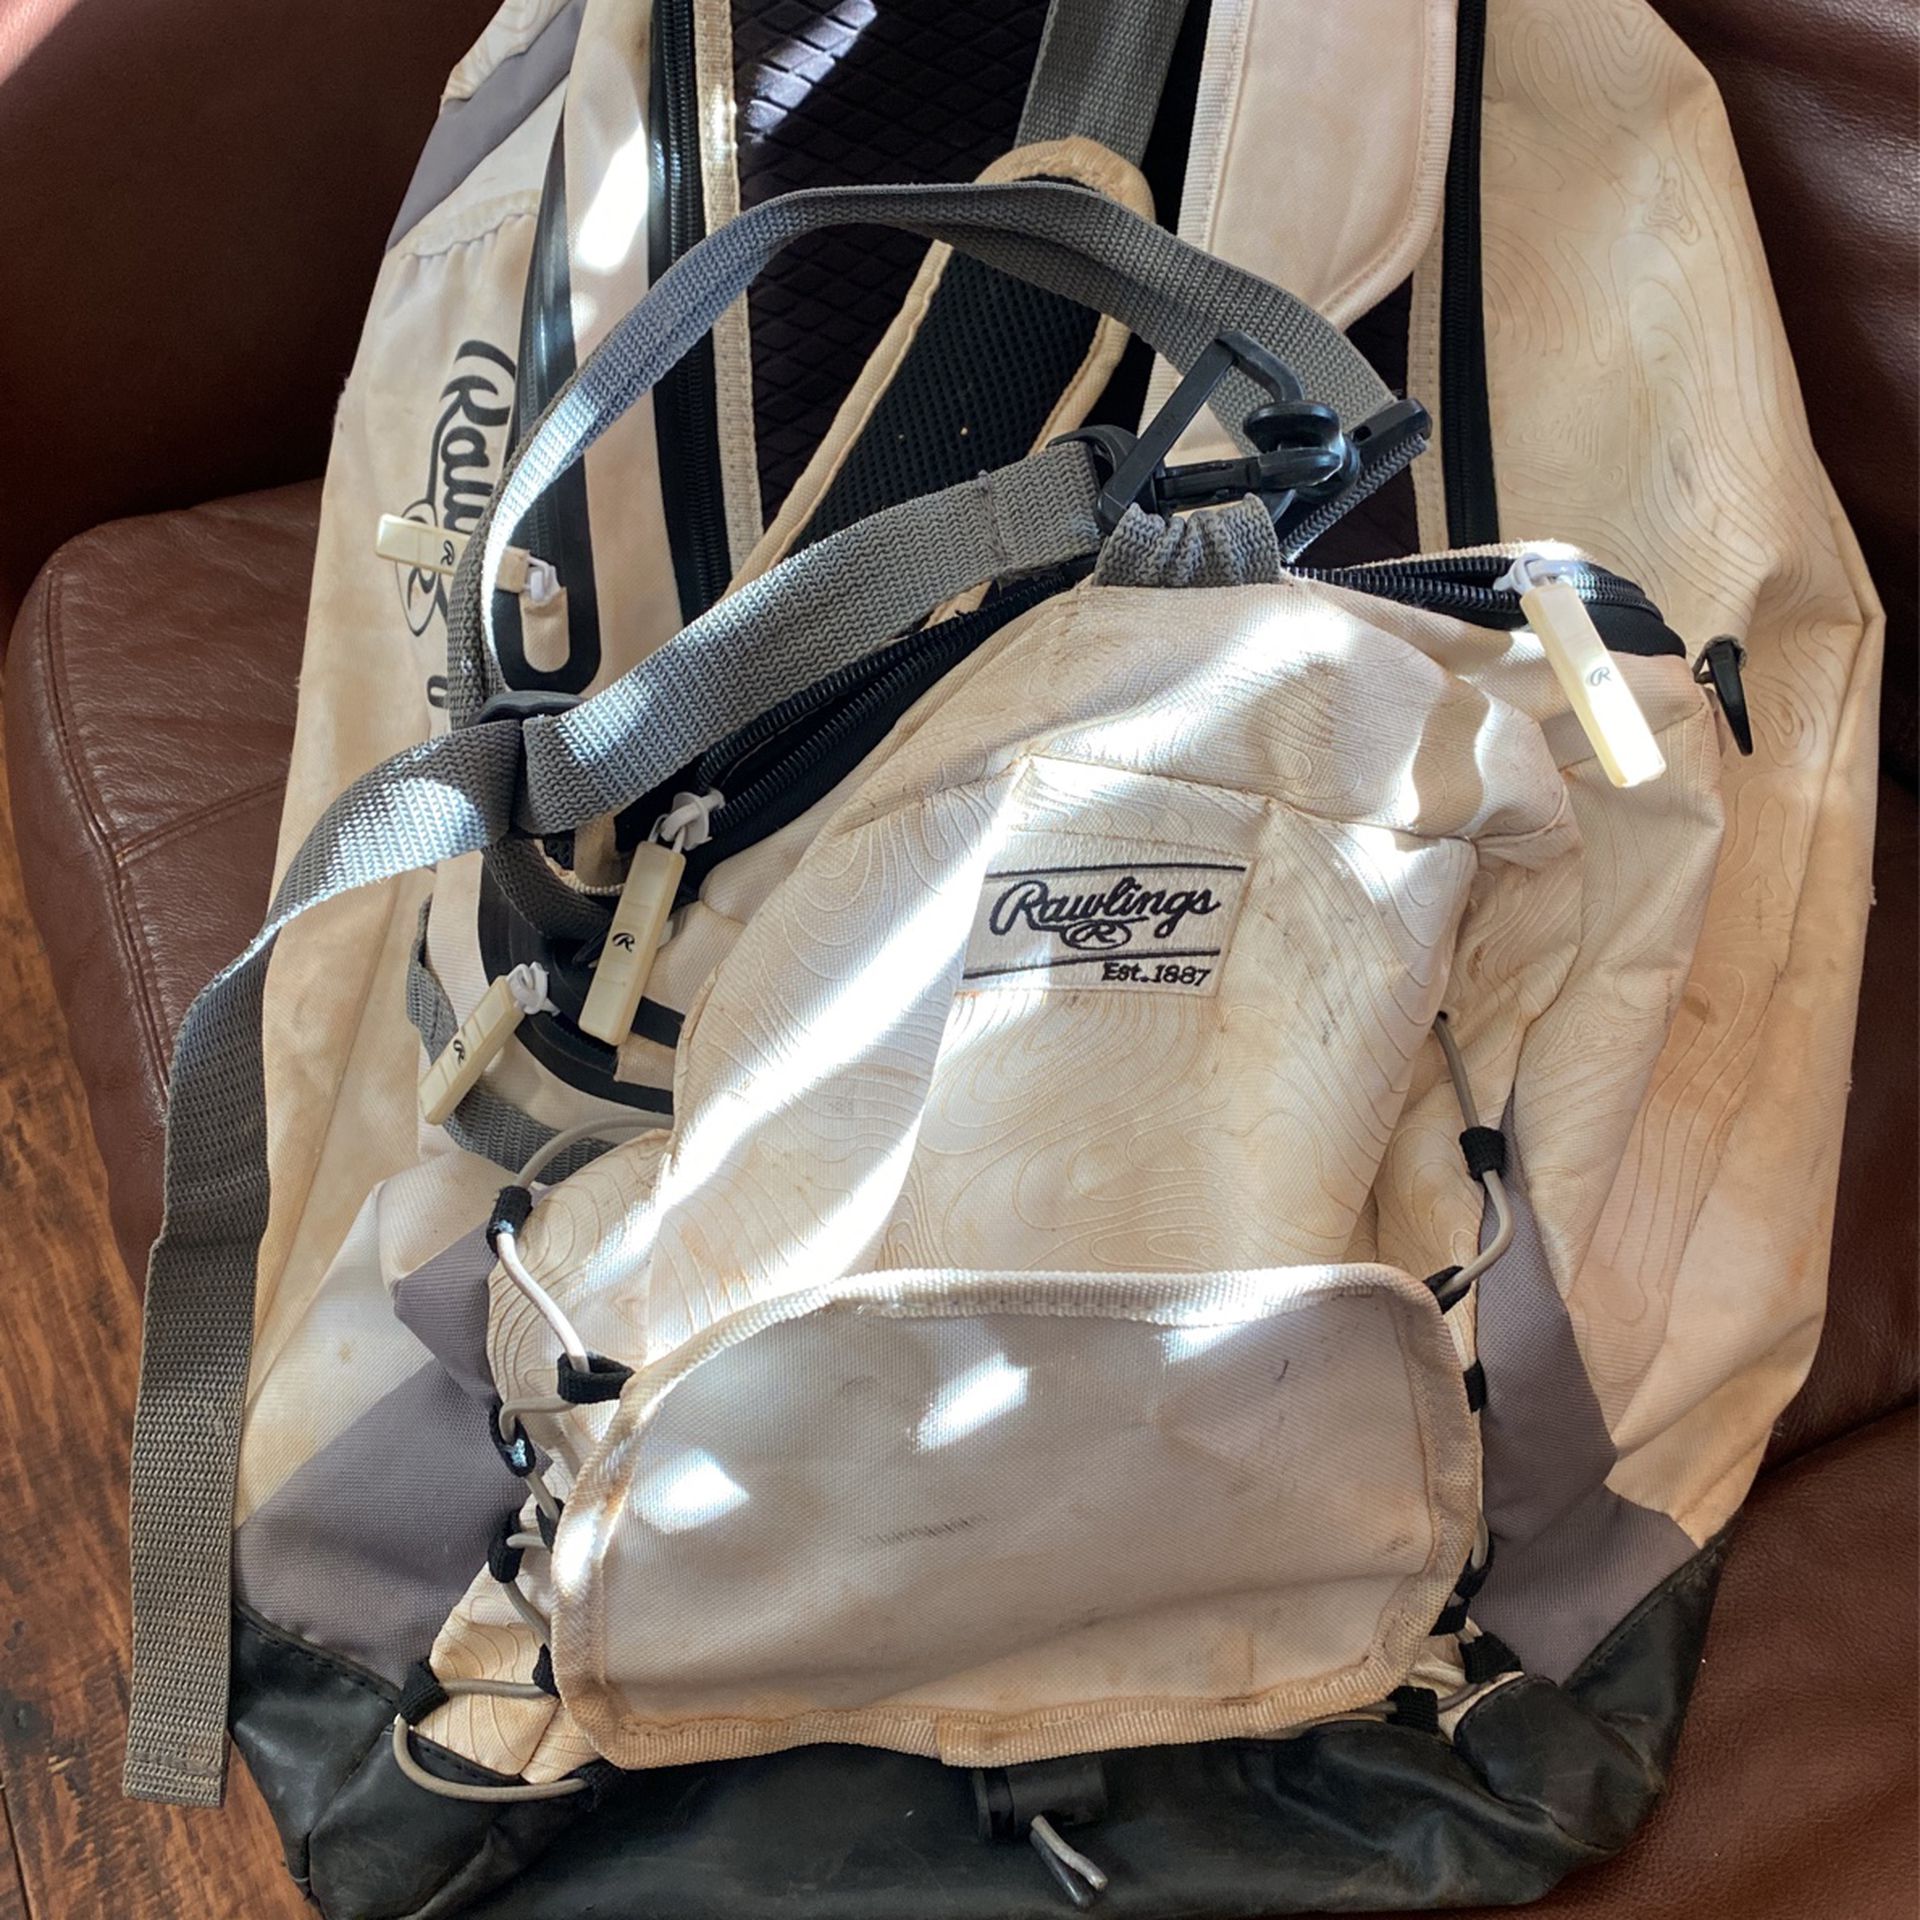 Rawlings Hybrid Baseball Backpack/Duffle Bag